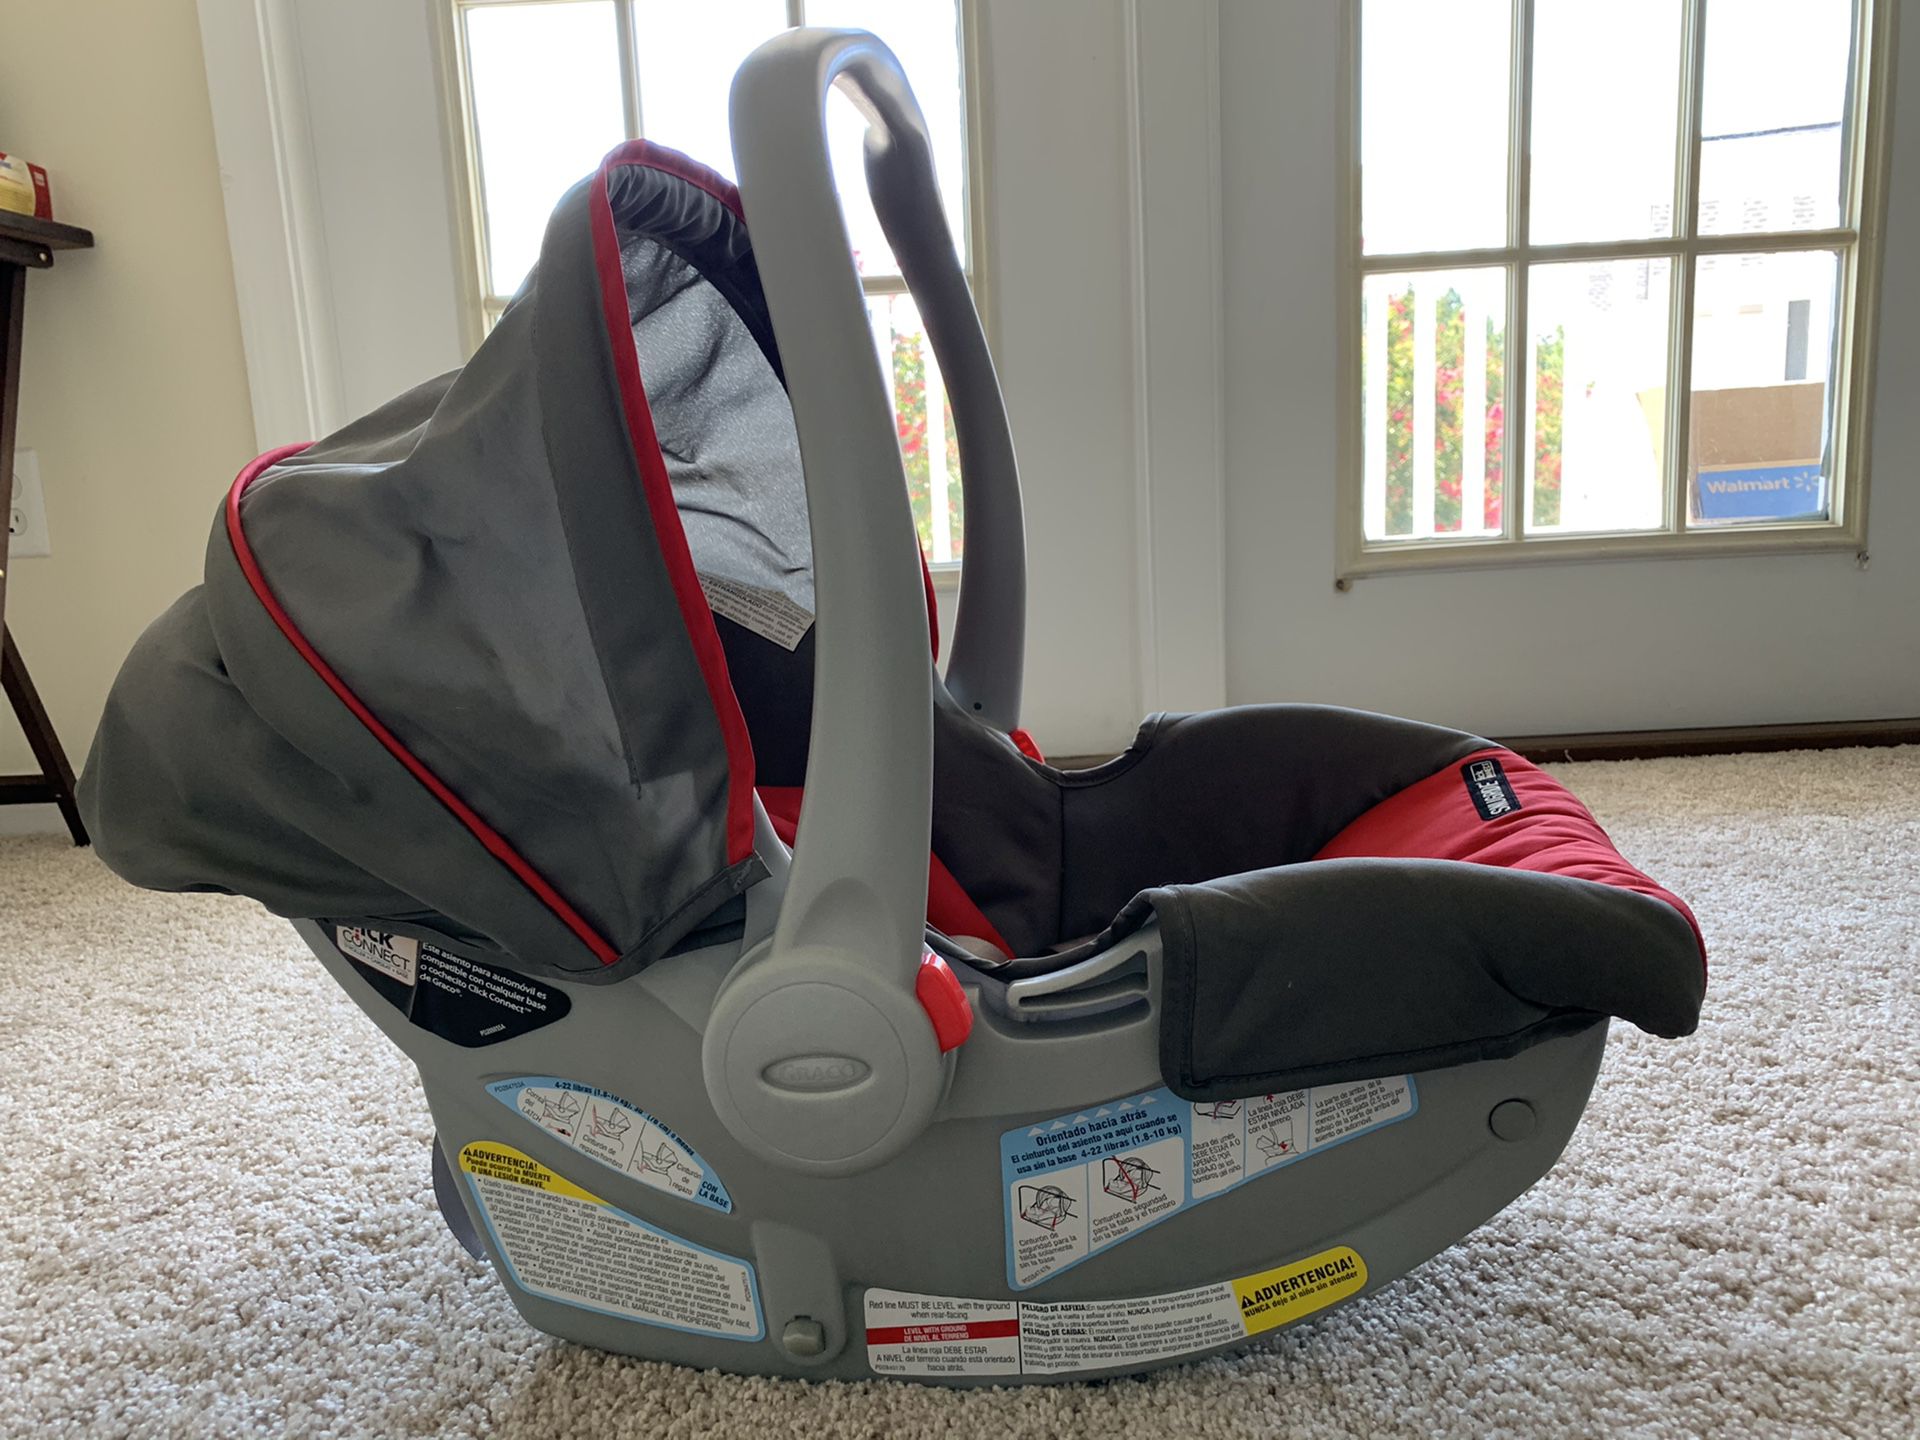 Graco SnugRide Infant Car Seat + Stroller for sale.